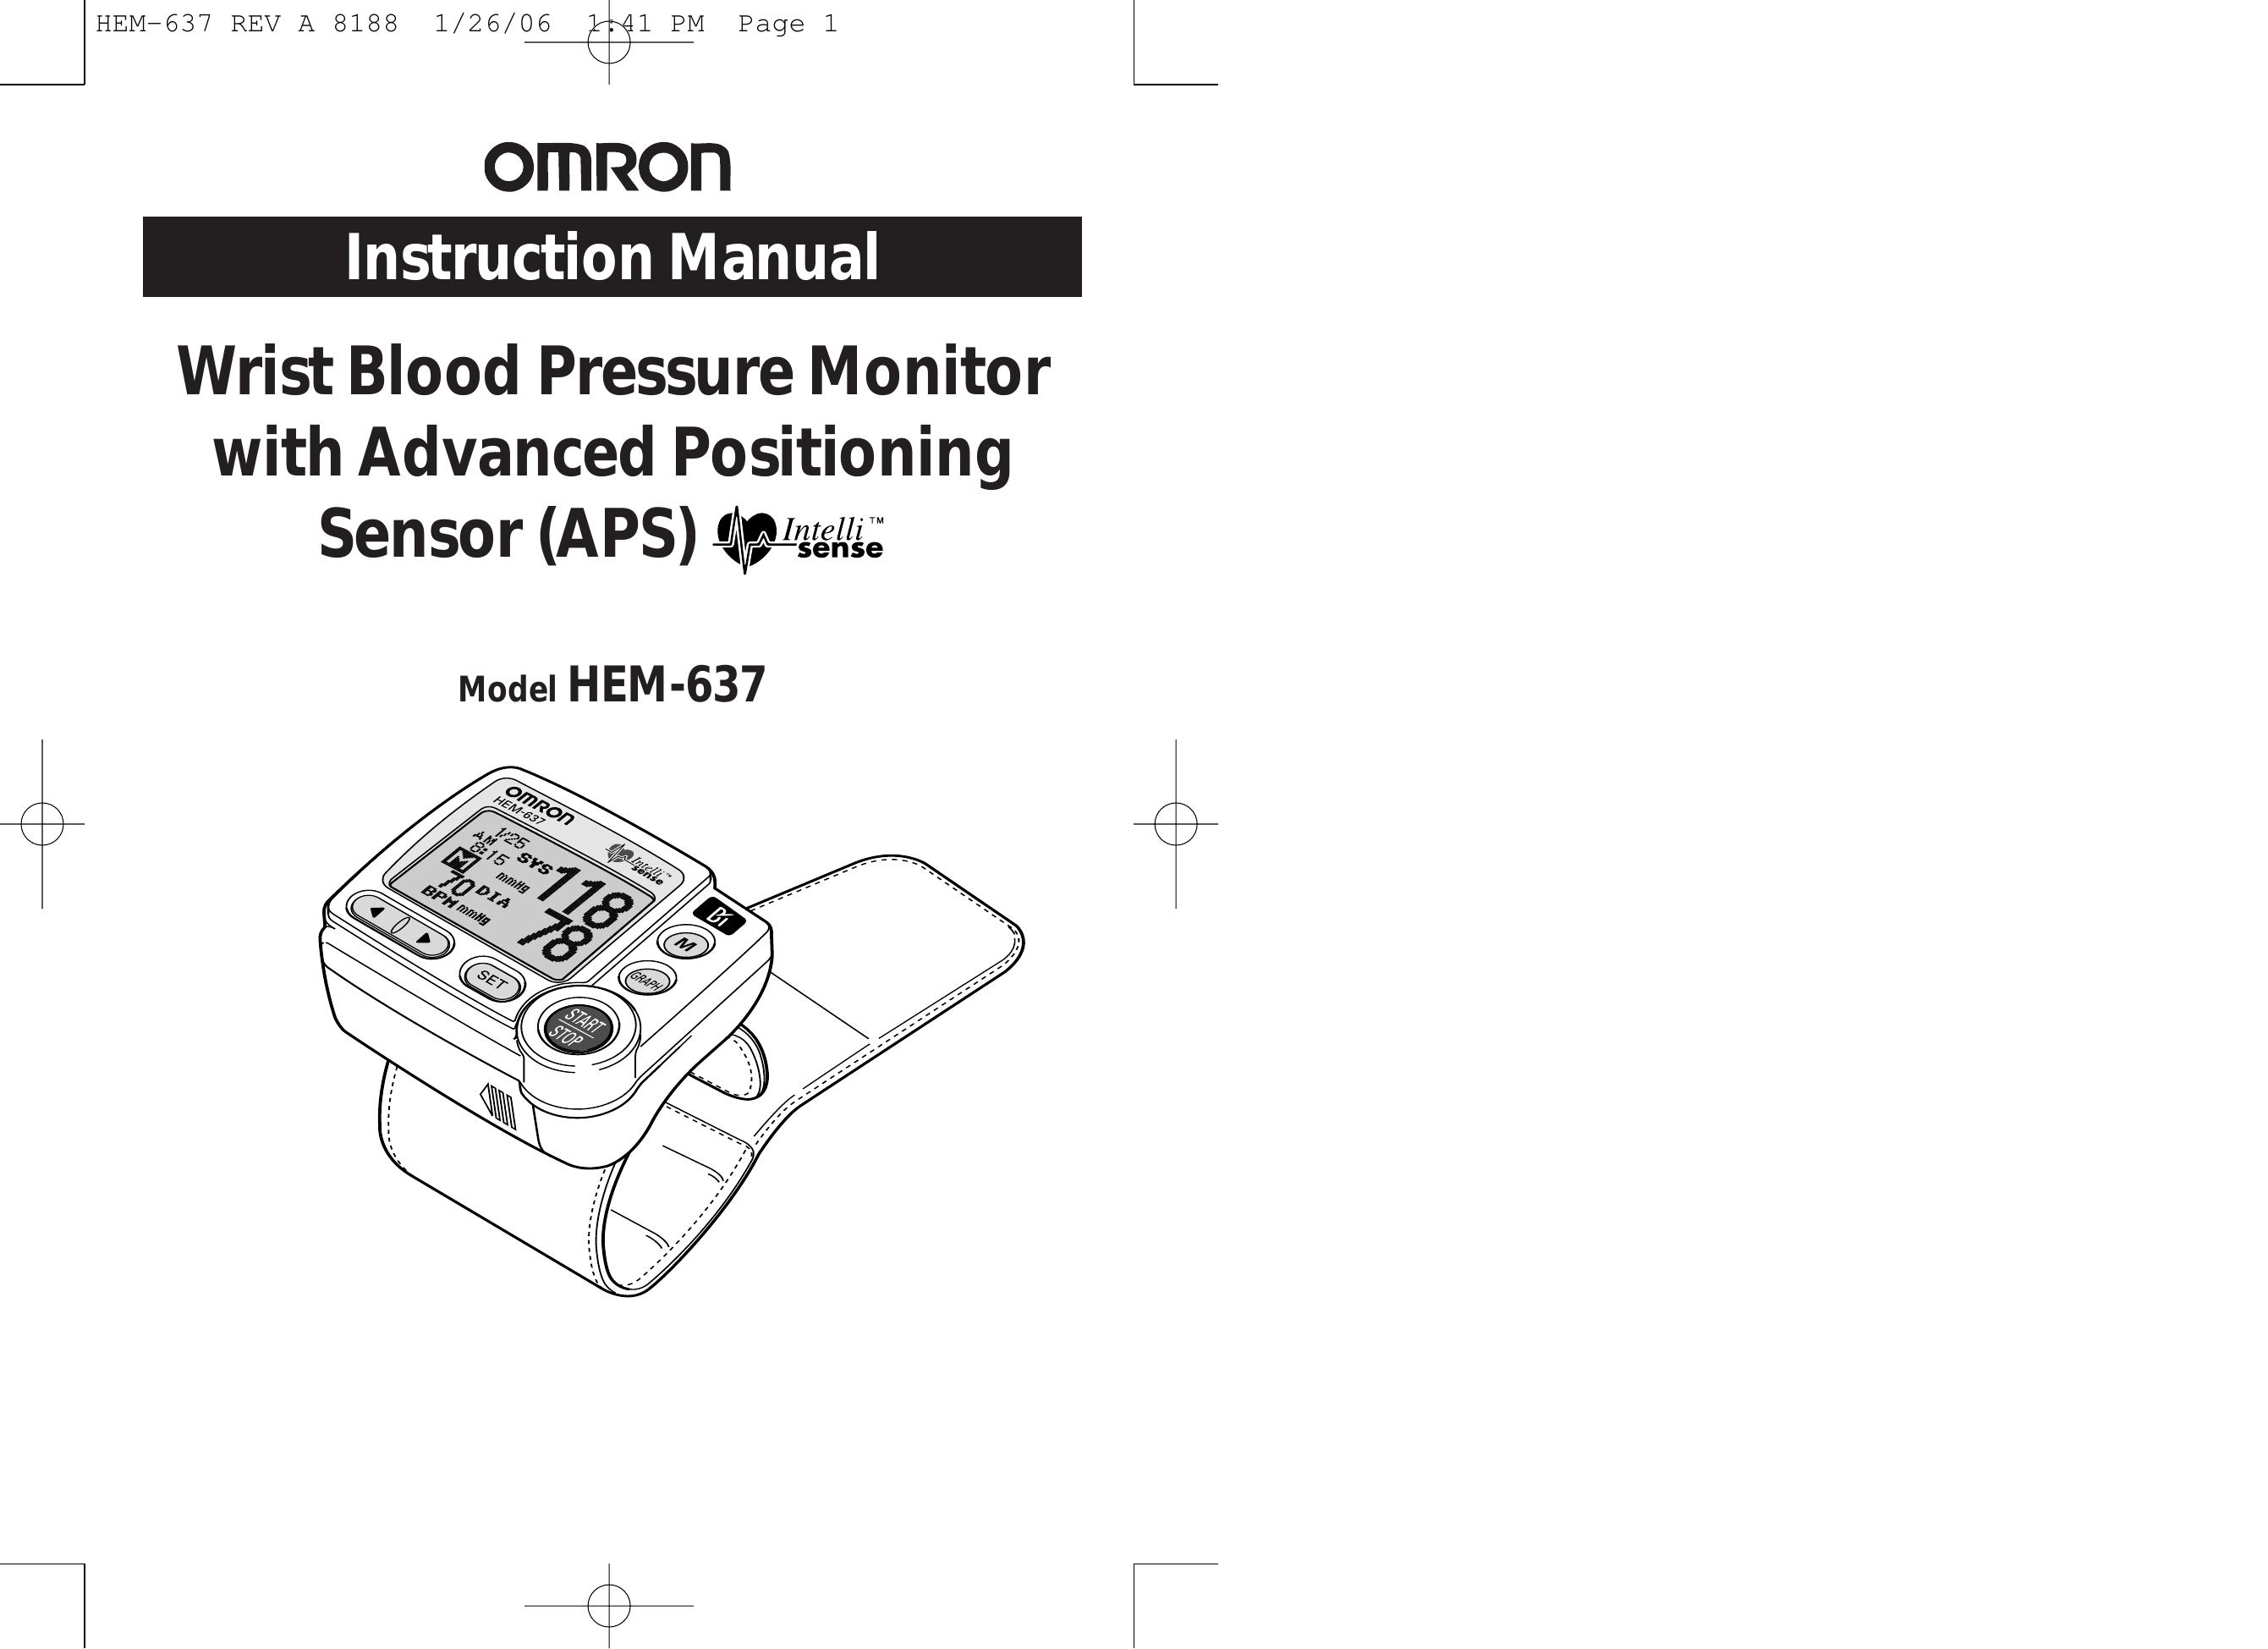 Omron Healthcare HEM-637 Blood Pressure Monitor User Manual